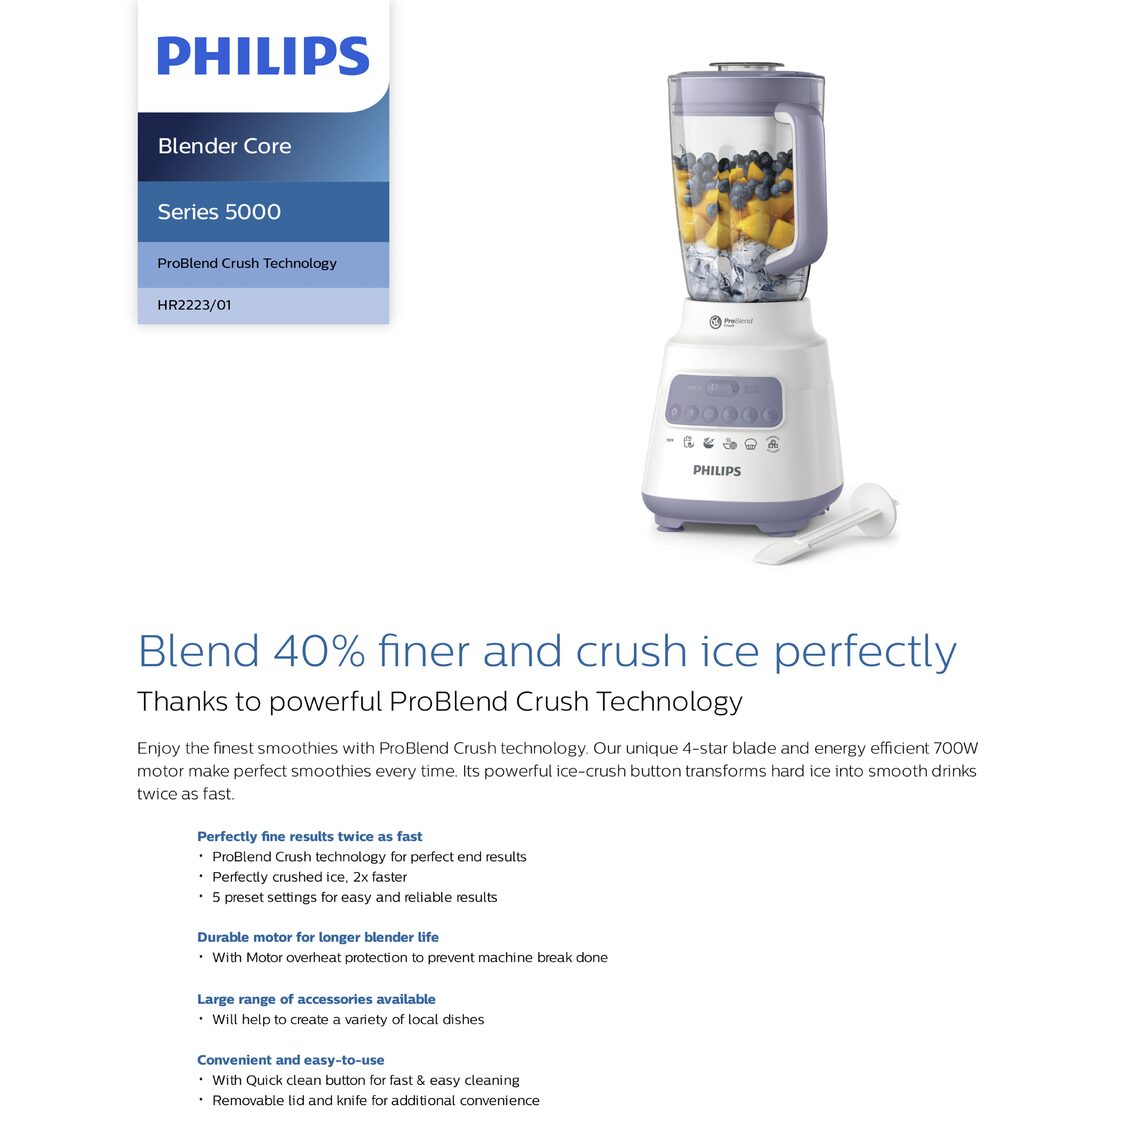 Philips Blender Series 5000 